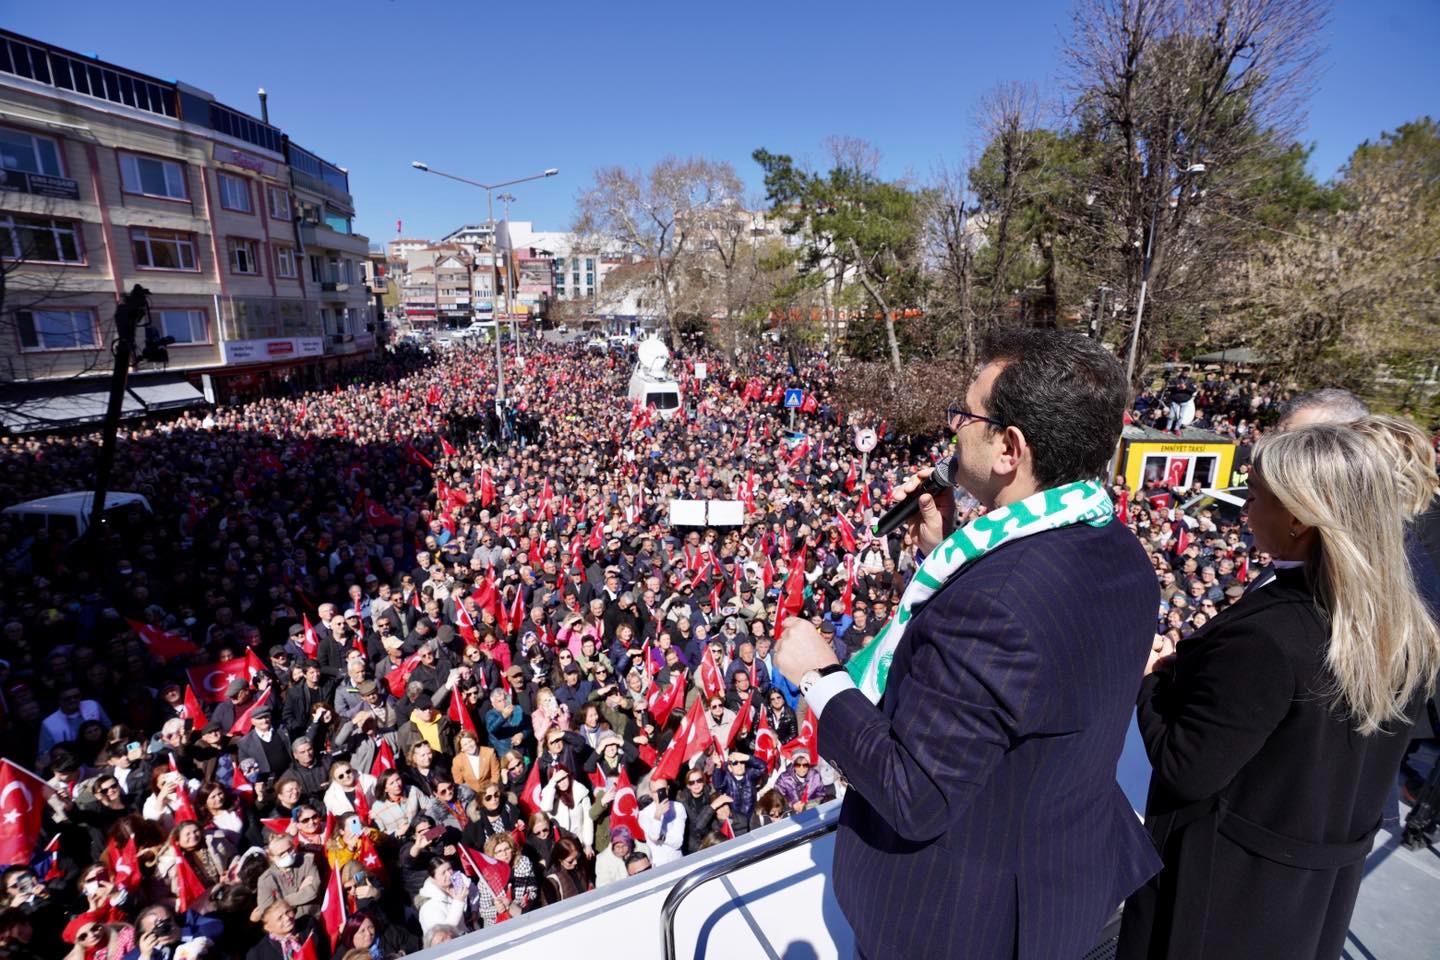 İmamoğlu, Kırklareli Cumhuriyet Meydanı’nda konuştu! 86 milyon iktidar olsun, her şey çok güzel olsun